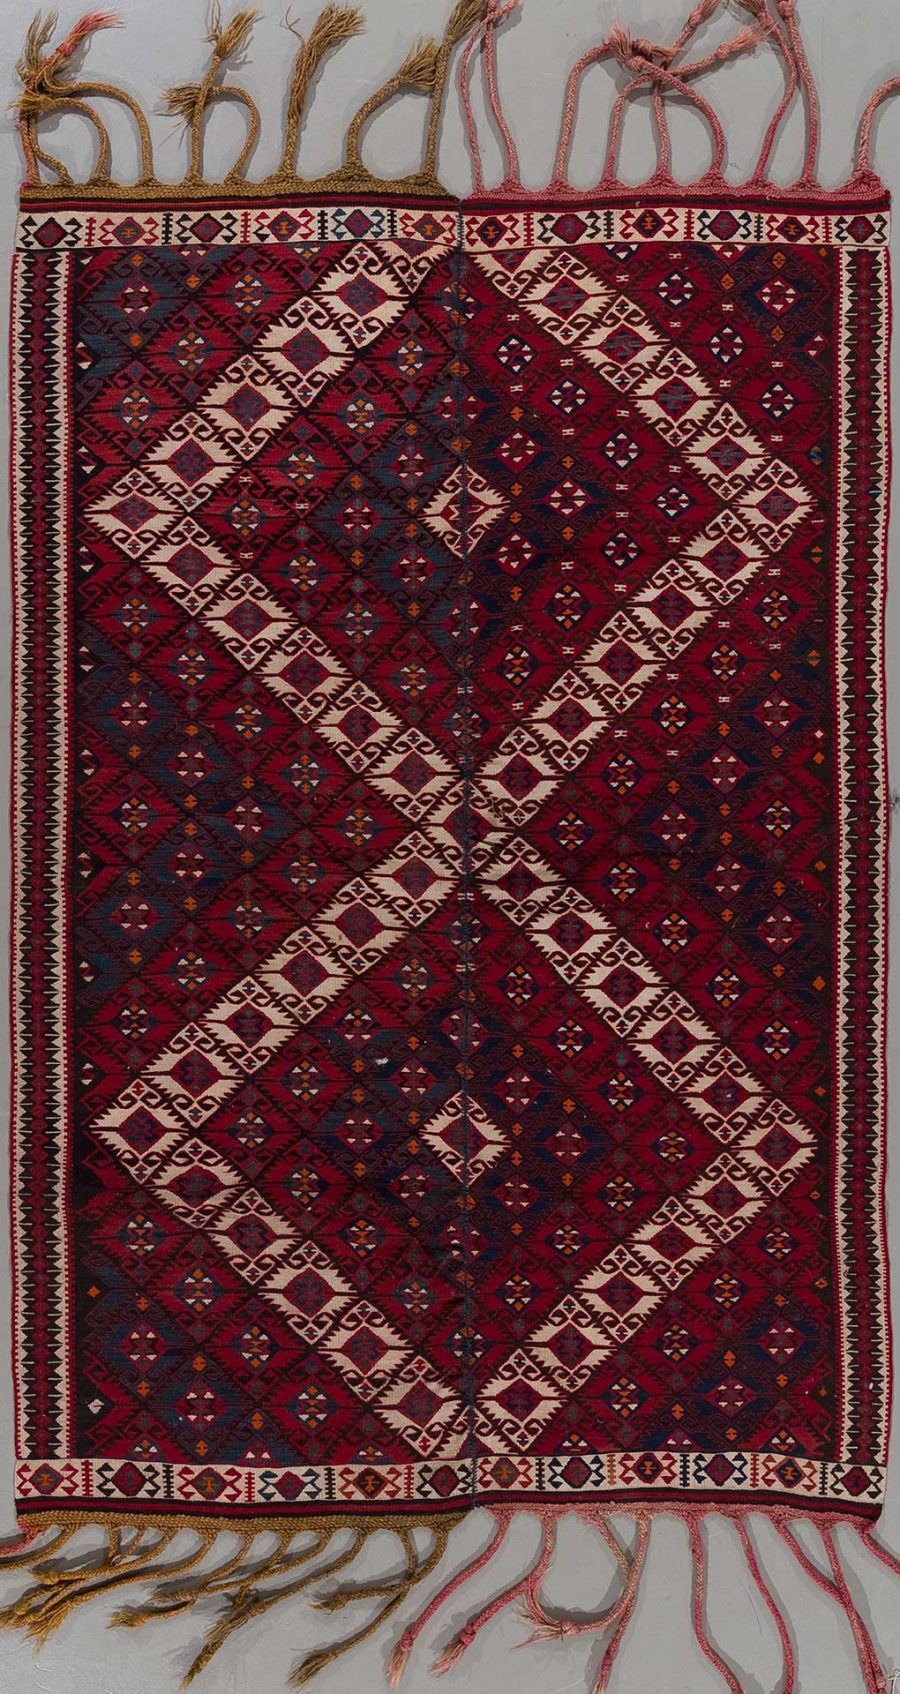 Traditioneller Teppich mit komplexem, geometrischem Muster in überwiegend roten und blauen Farbtönen, umrahmt von einer dekorativen Bordüre und ausgefransten Enden.